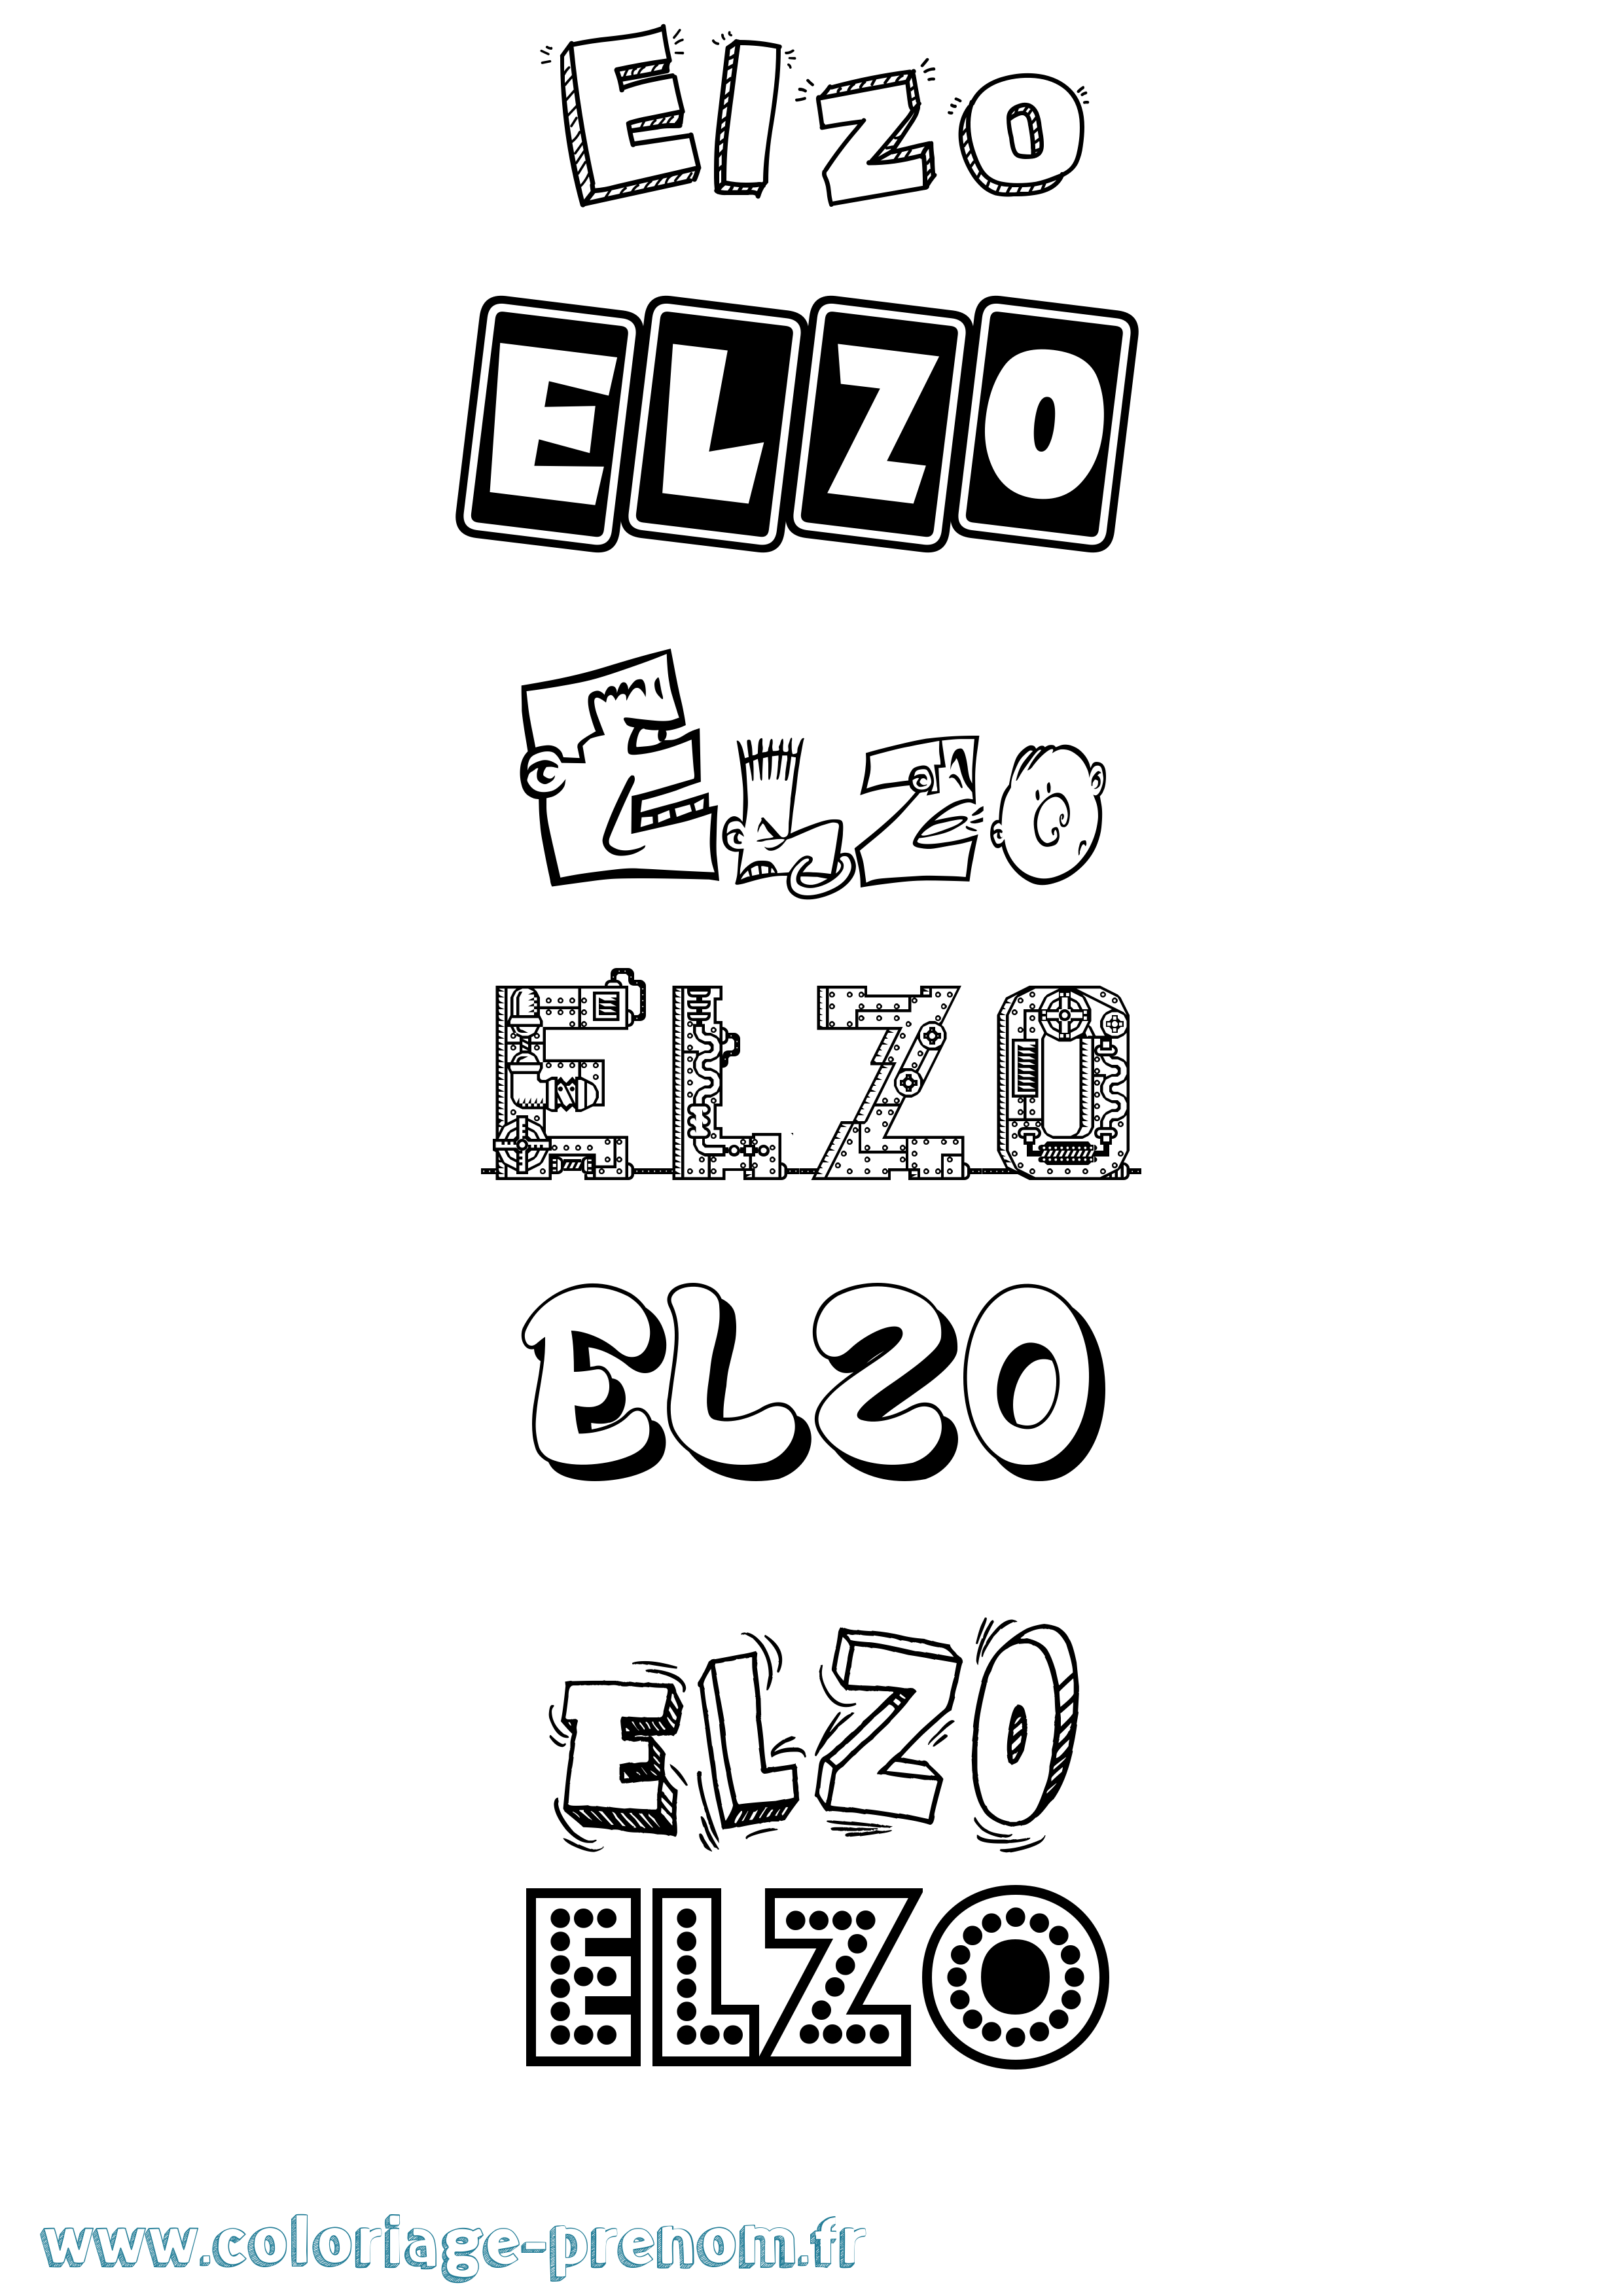 Coloriage prénom Elzo Fun